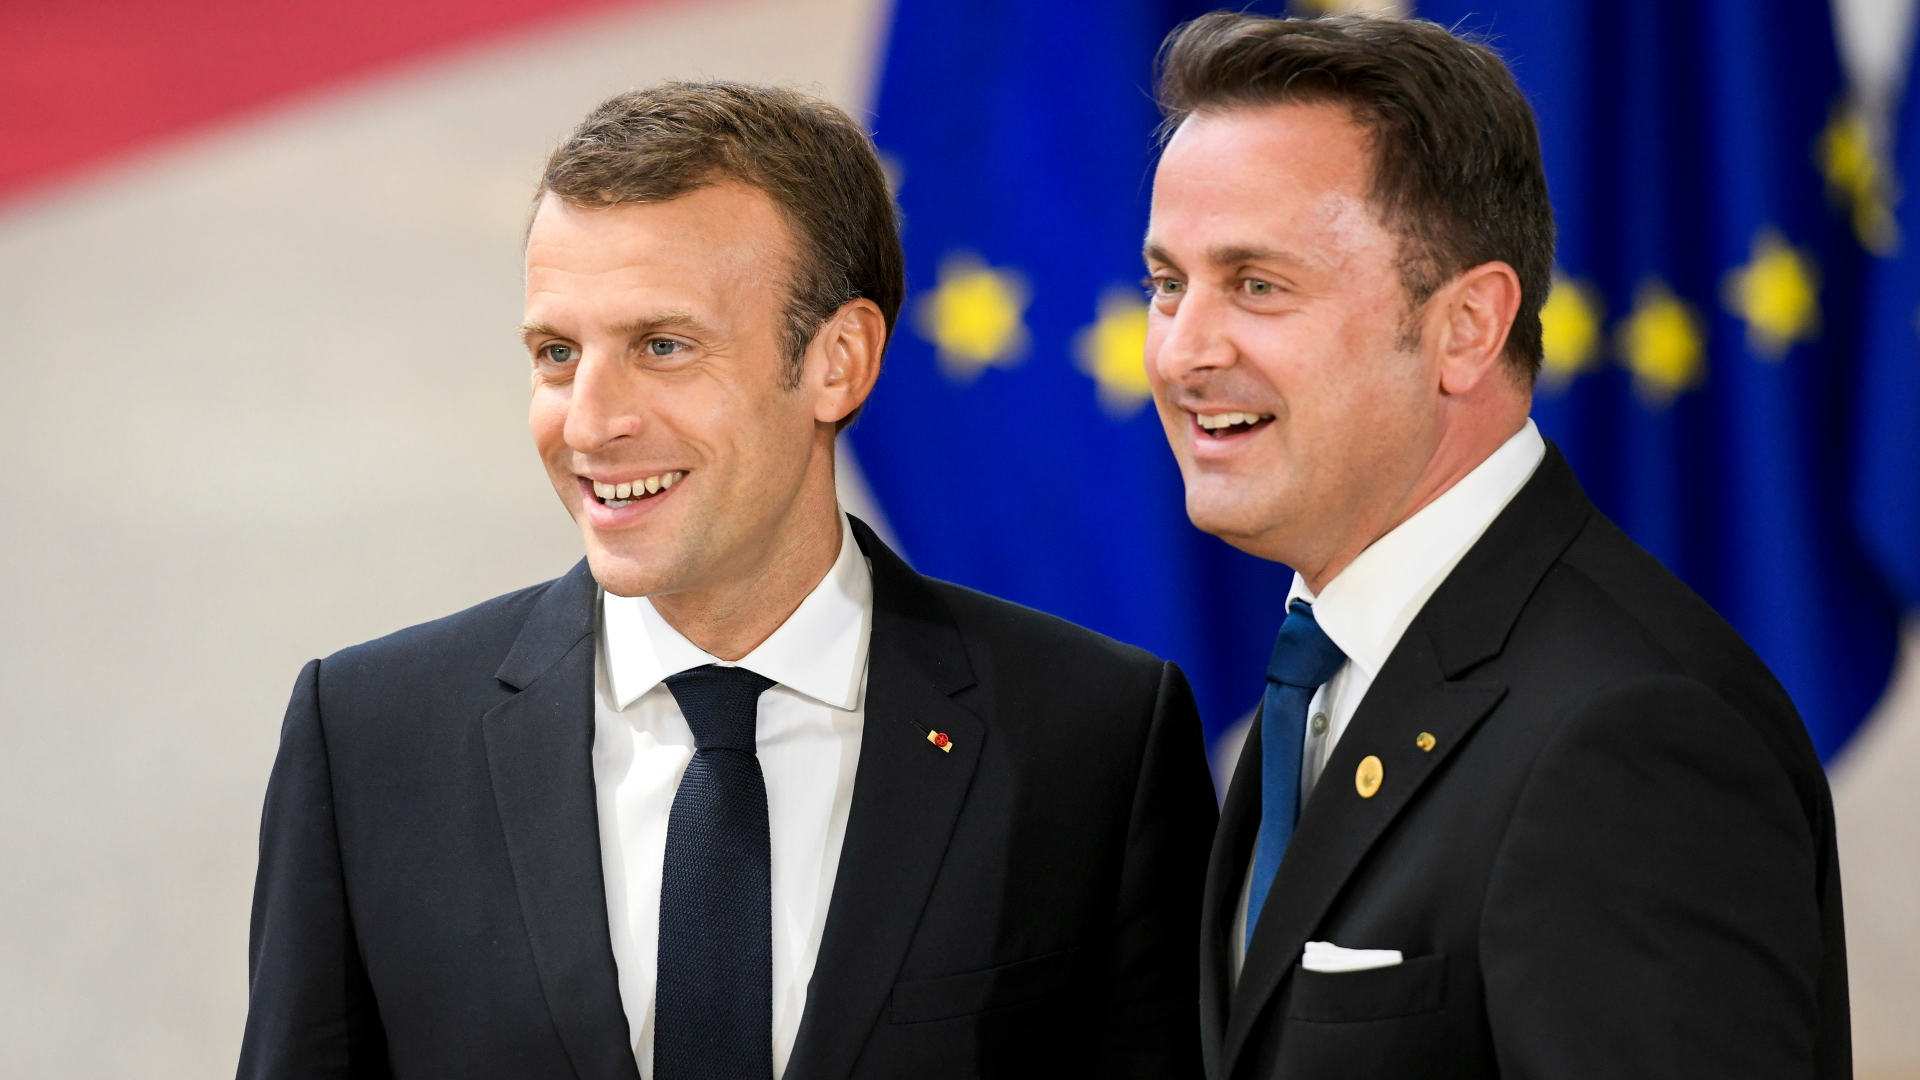 Frankreichs Präsident Emmanuel Macron (links) neben Luxemburgs Premier Xavier Bettel auf dem EU-Gipfel in Brüssel.